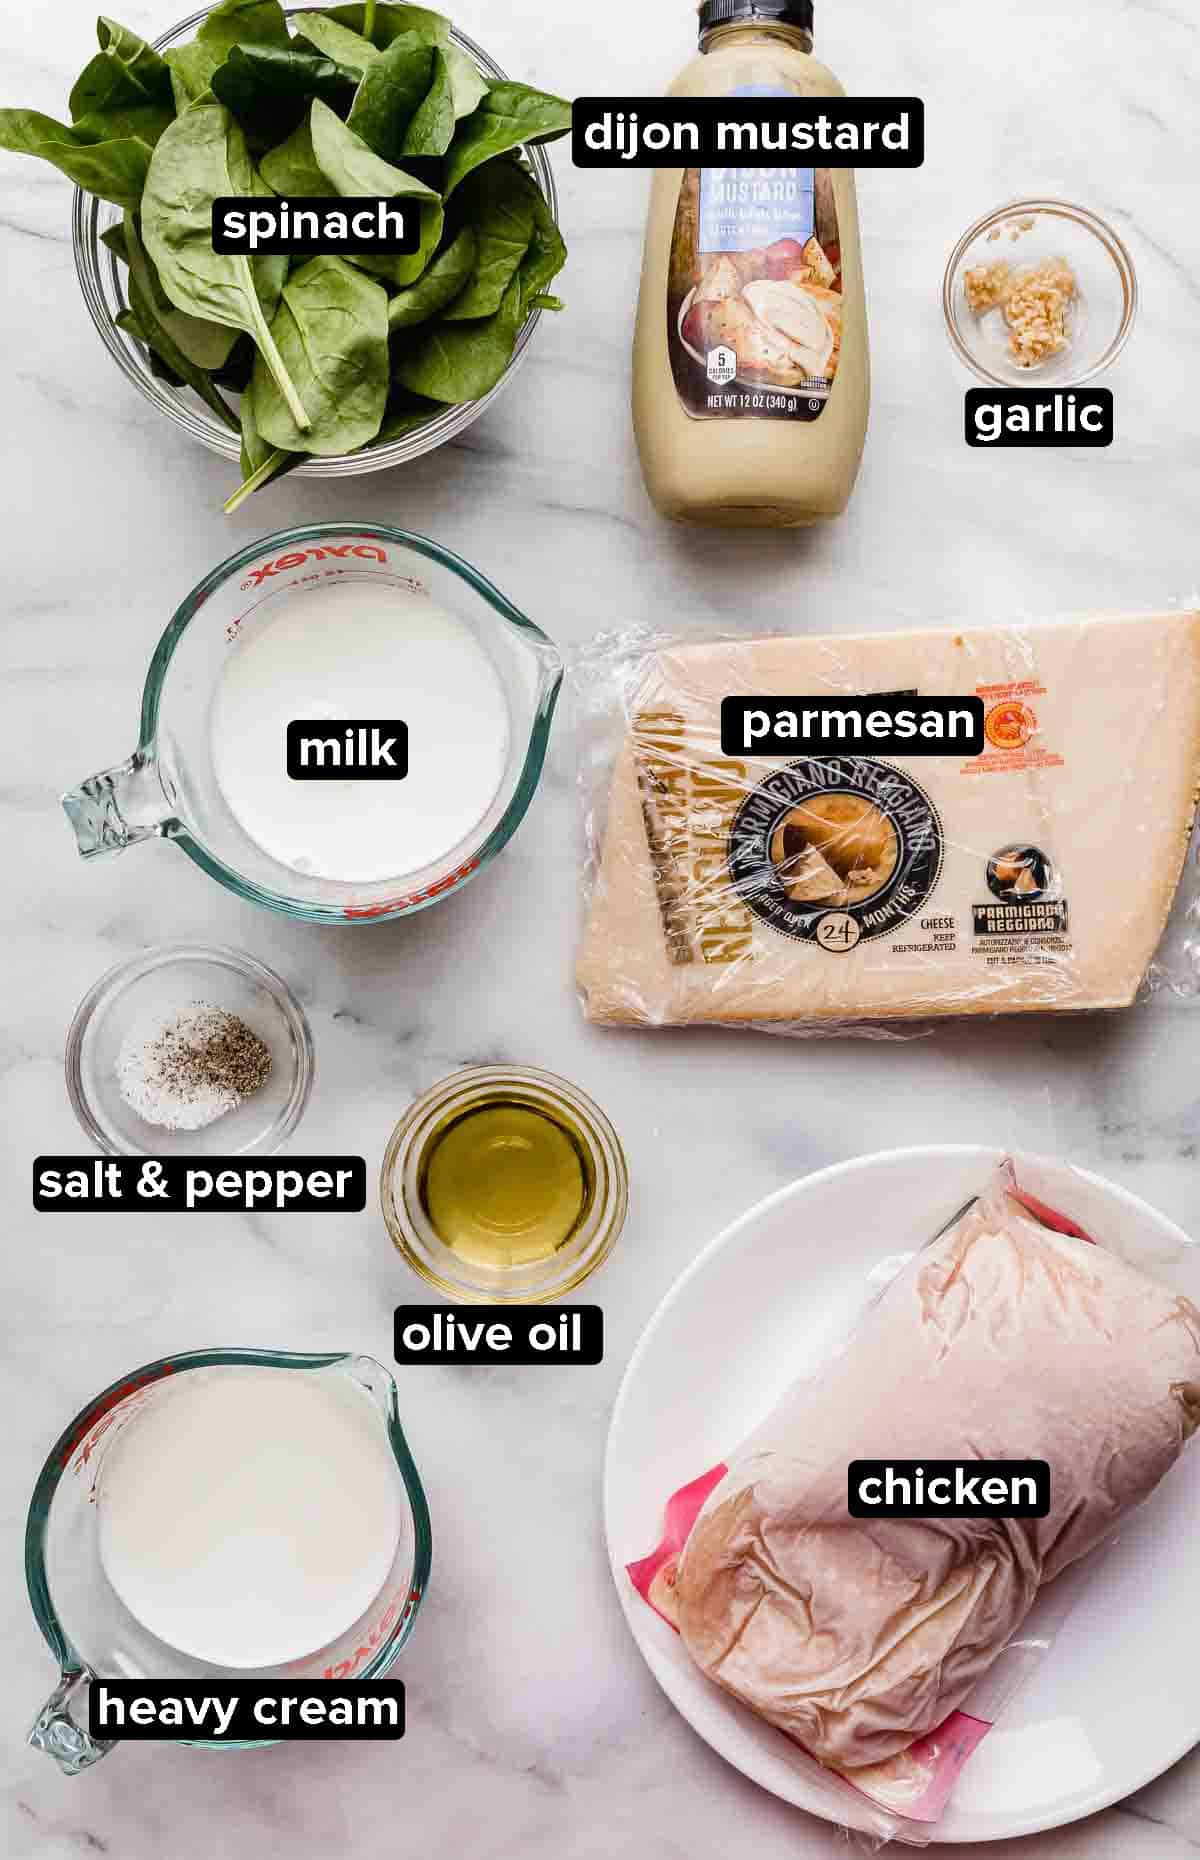 Chicken Dijon recipe ingredients on a white background: raw chicken breasts, parmesan, spinach, milk, heavy cream, dijon mustard, garlic, salt and pepper.